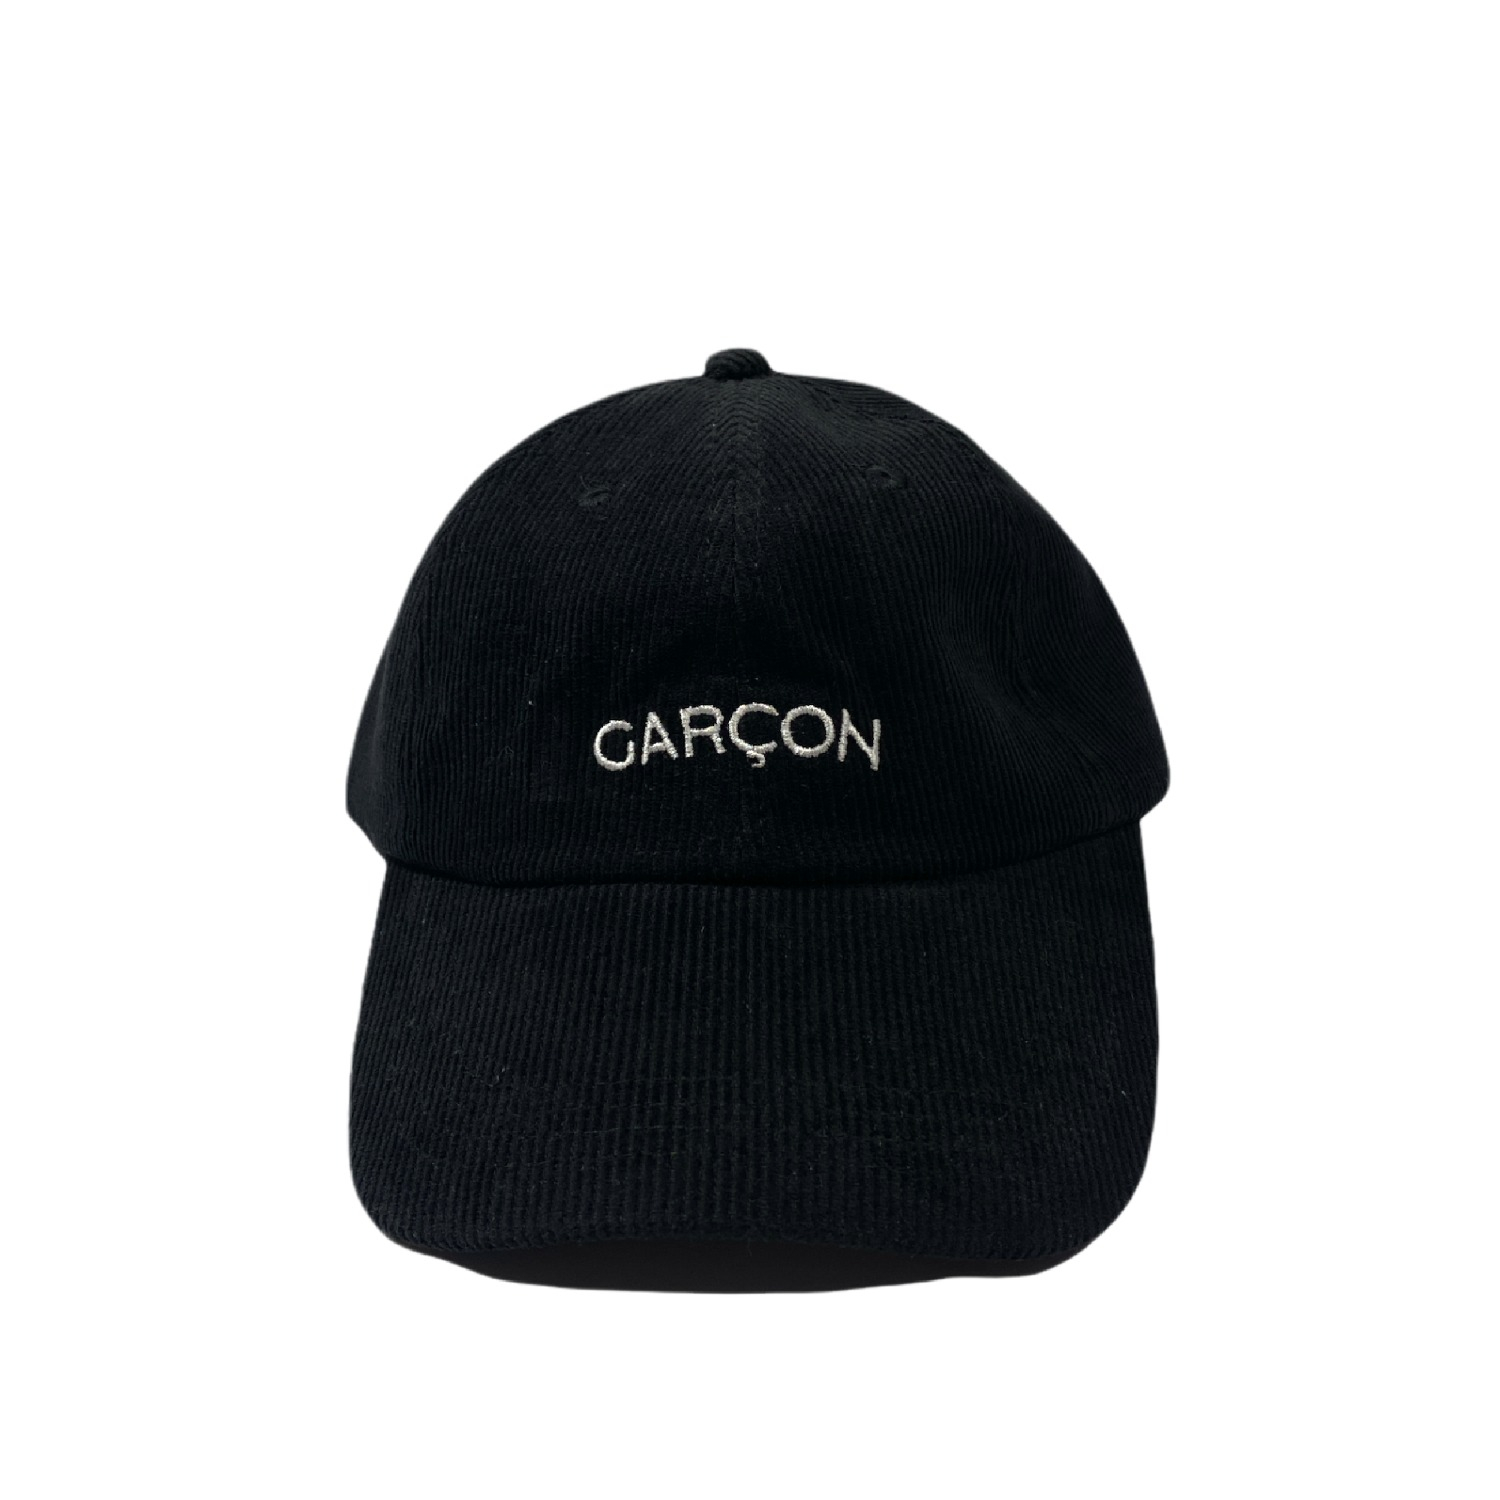 Garcon Cap (Black)